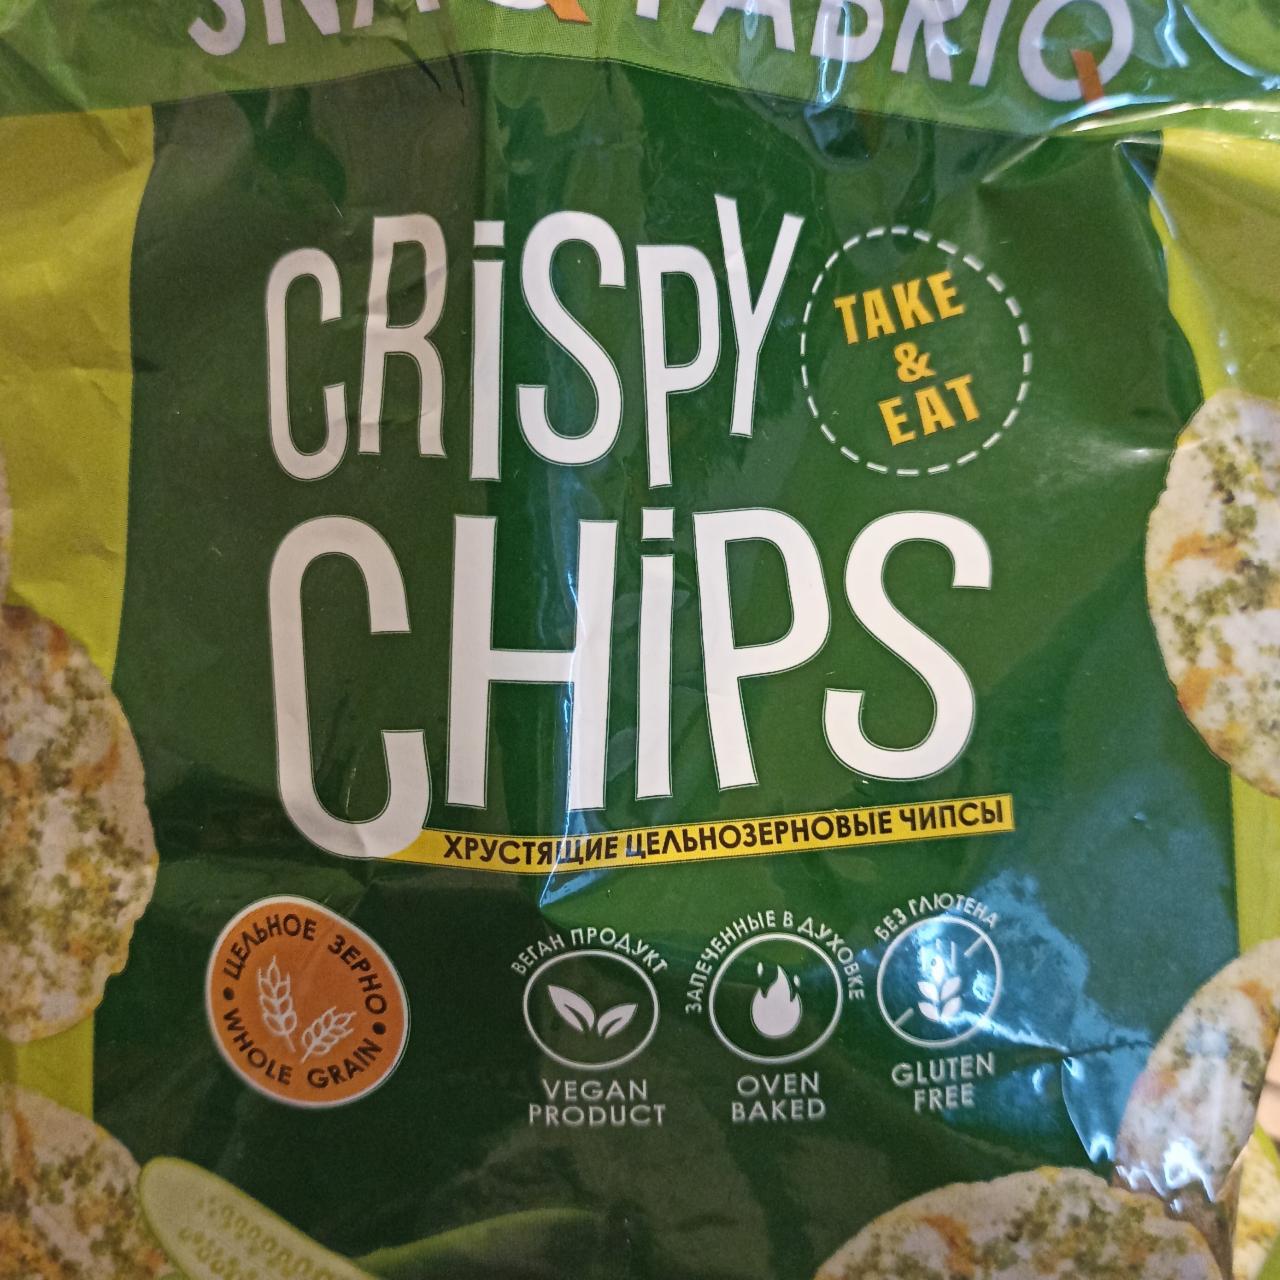 Фото - Чипсы цельнозерновые Crispy Chips огурчики Take&Eat